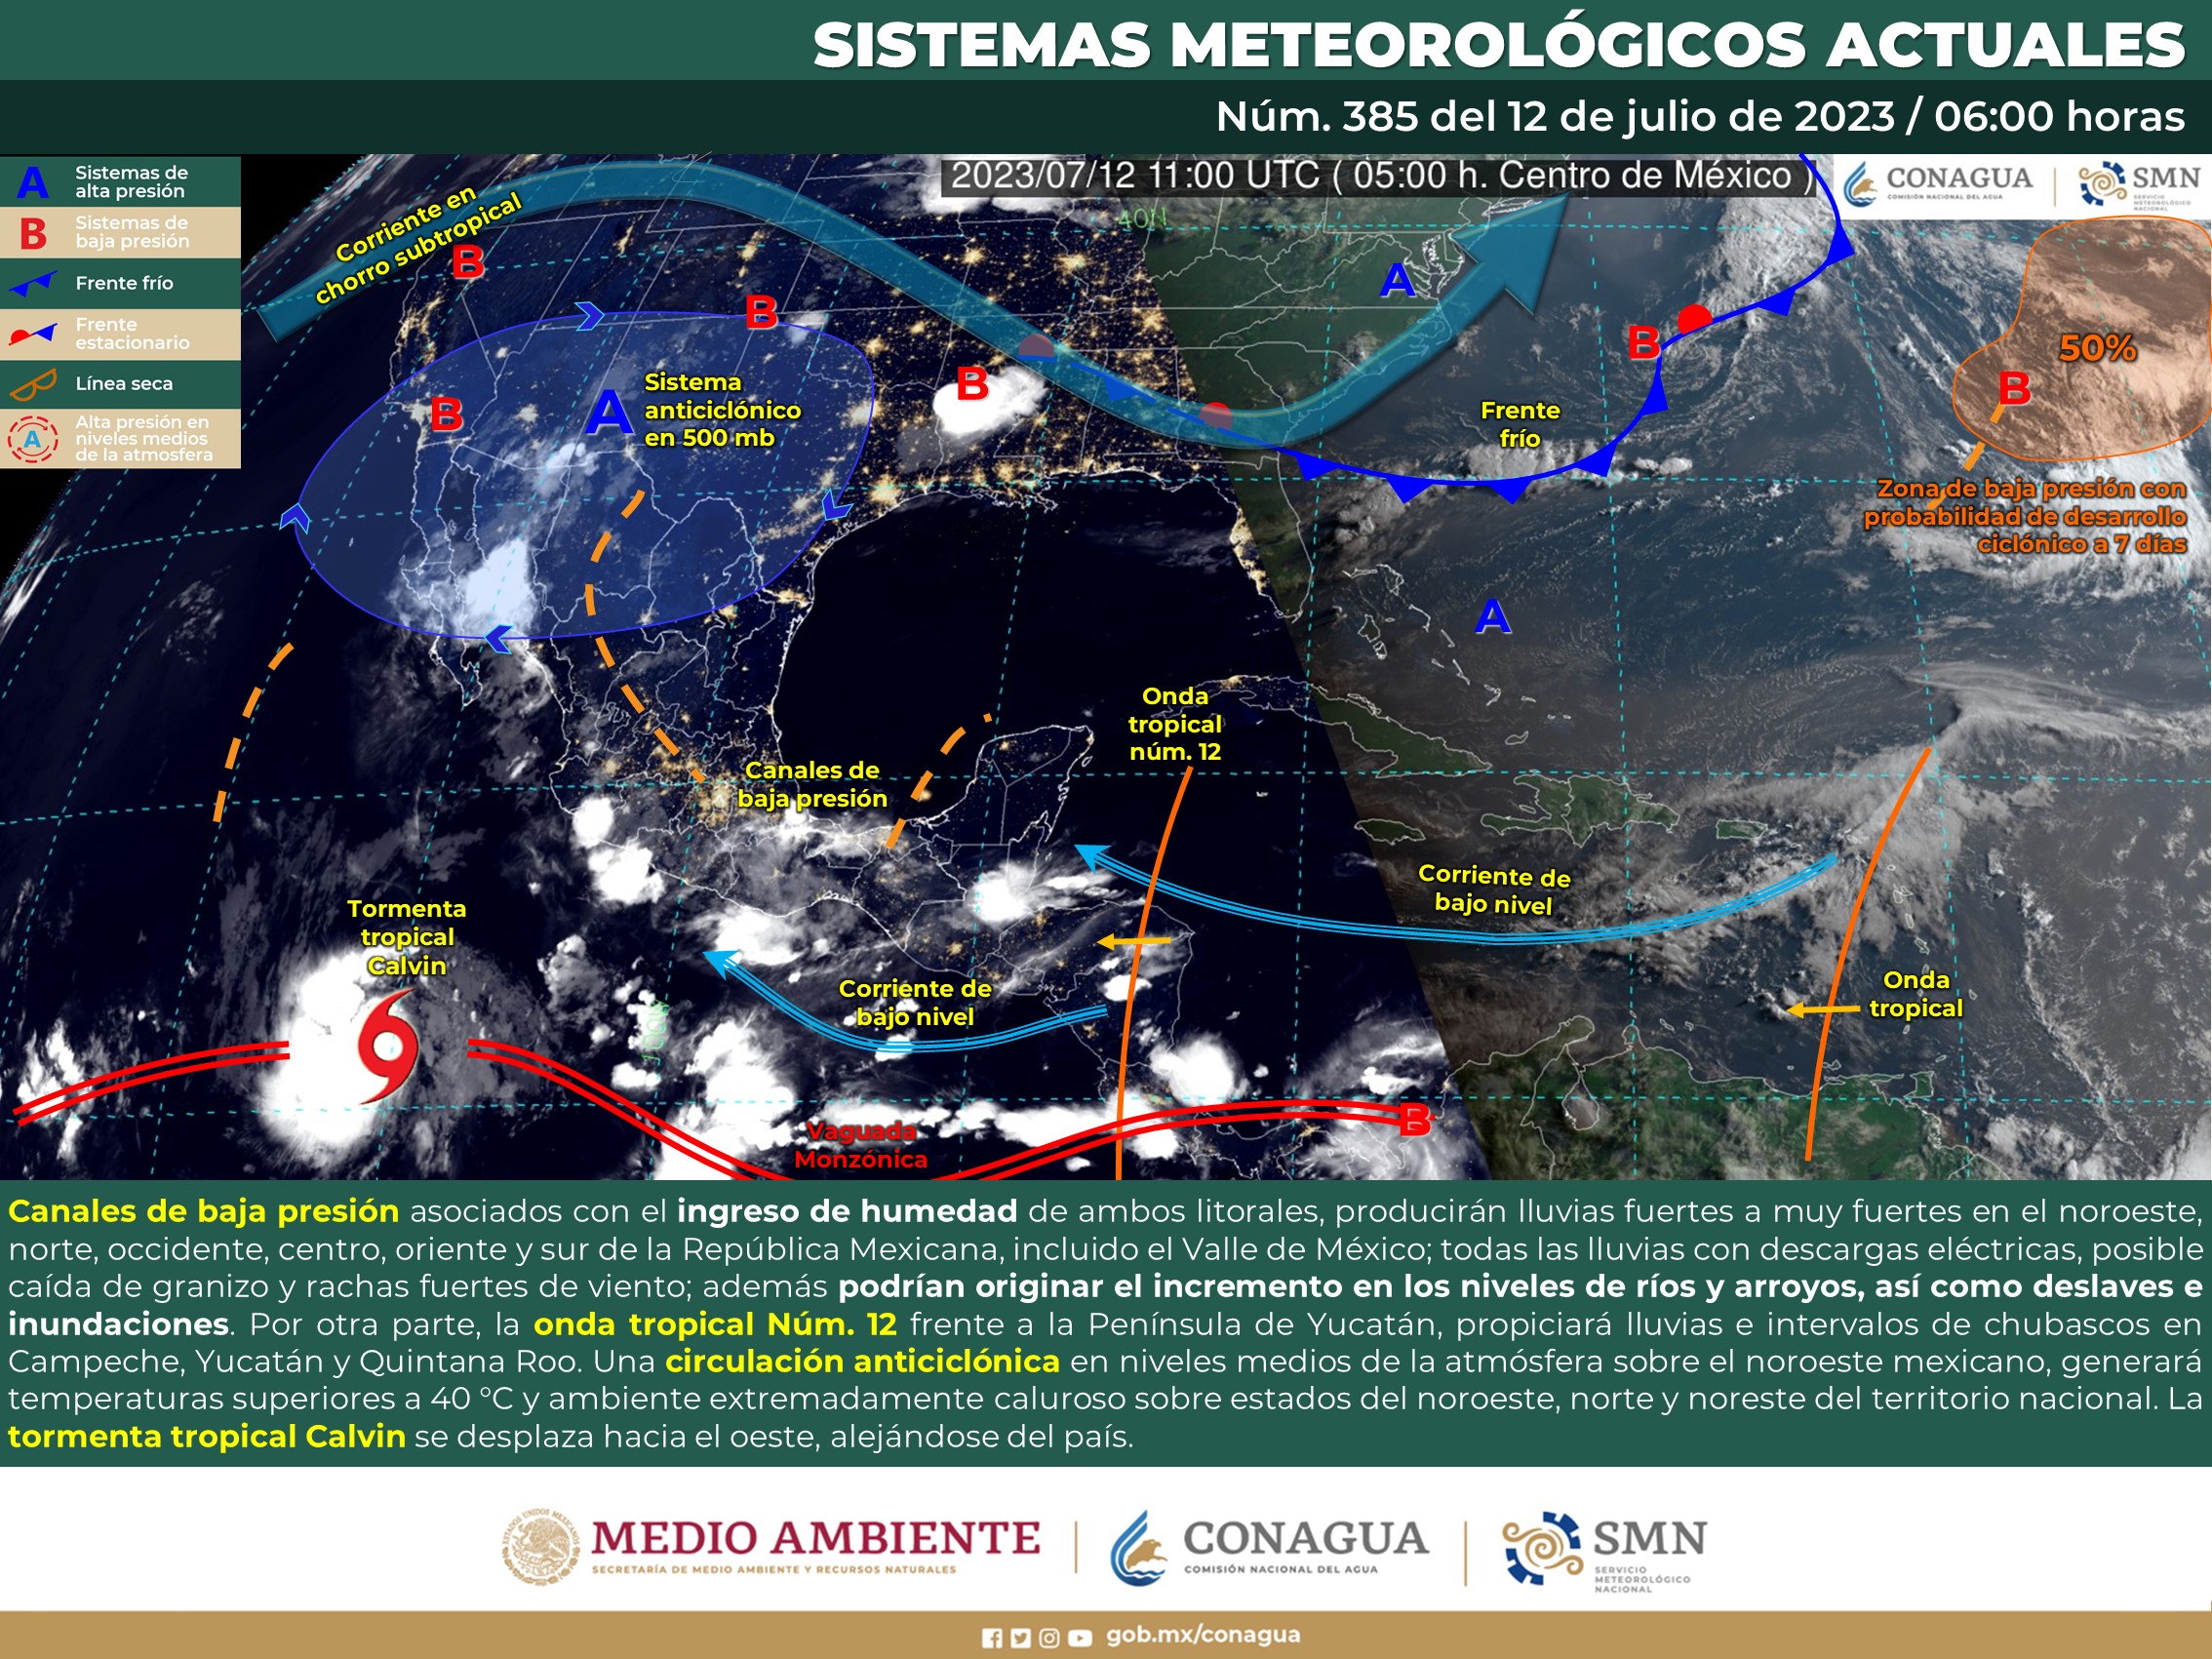 SMN prevé lluvias muy fuertes en Sonora, Chihuahua, Durango, Sinaloa, Colima, Oaxaca y Chiapas